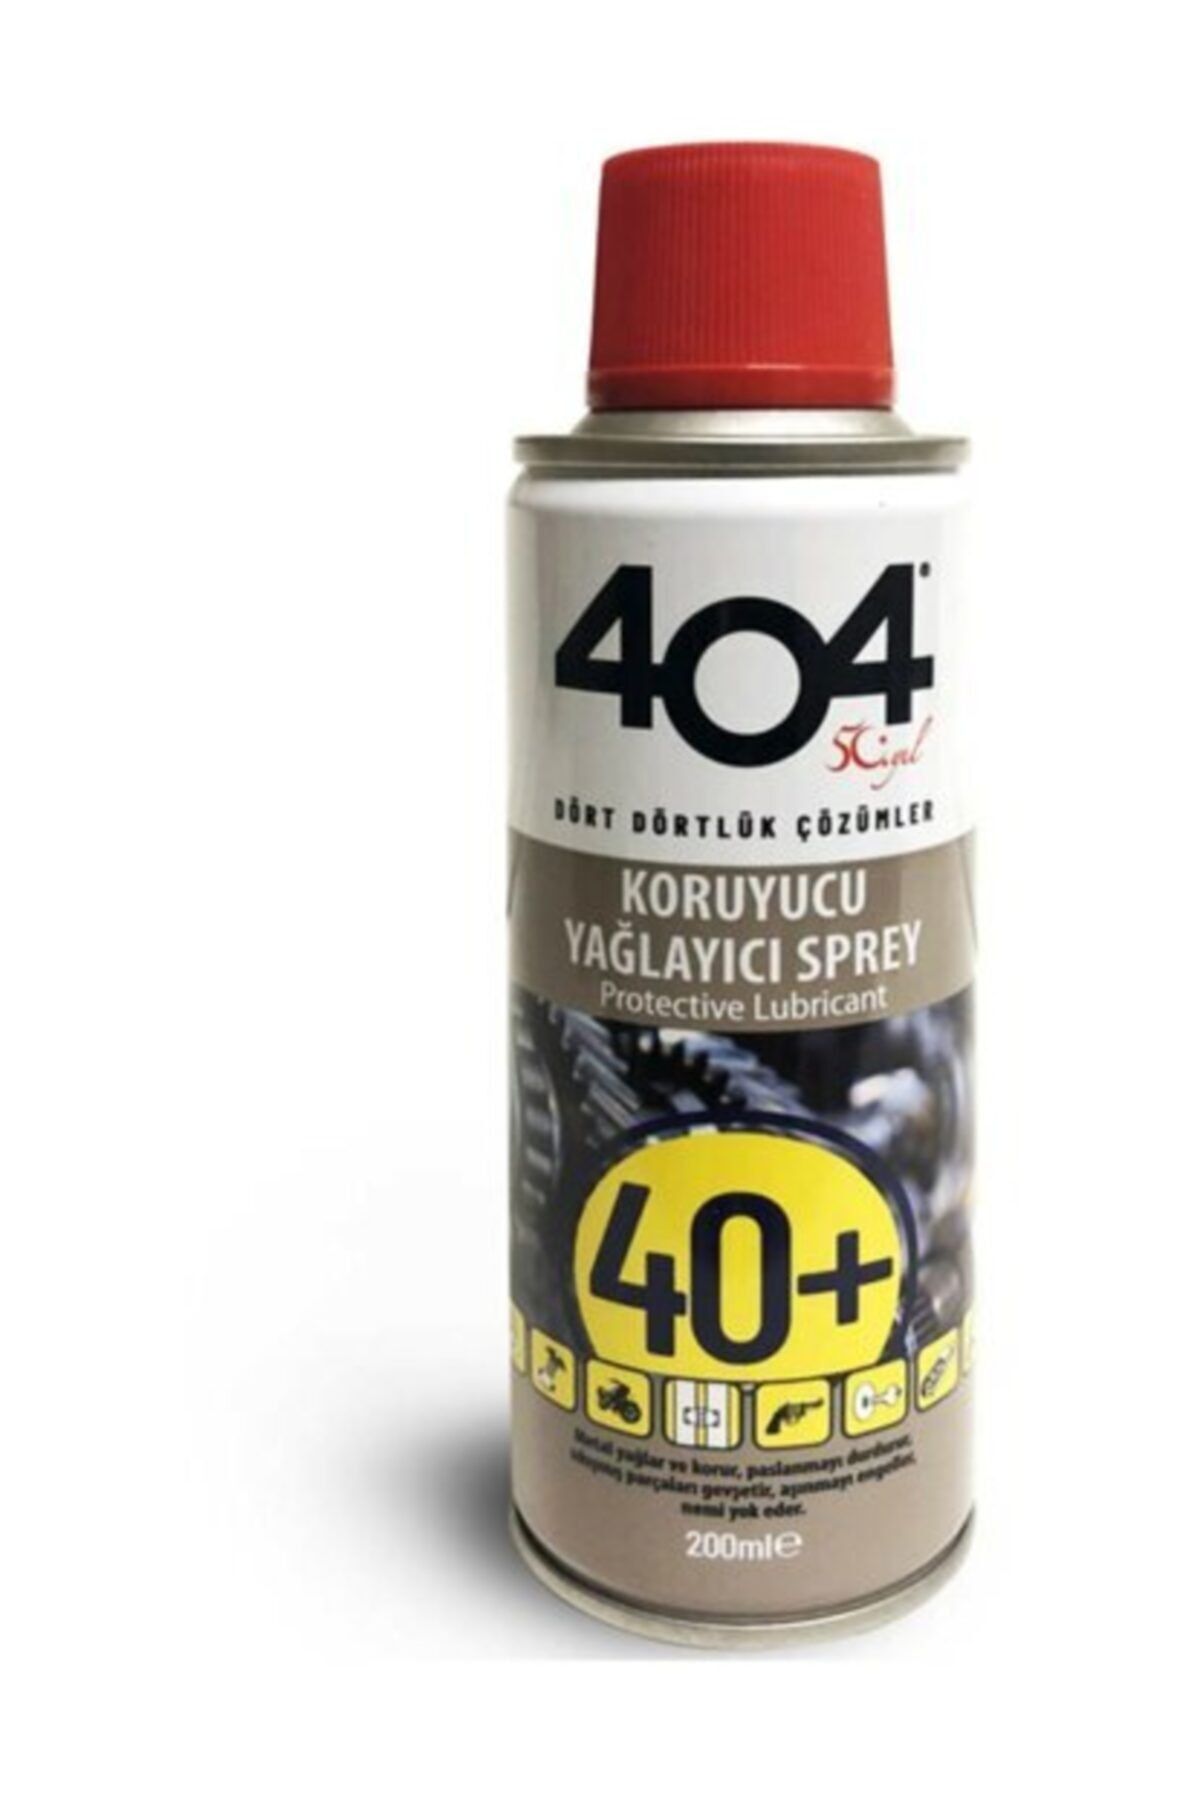 404 Kimya 404 40+ Koruyucu Yağlayıcı Pas Sökücü 200ml